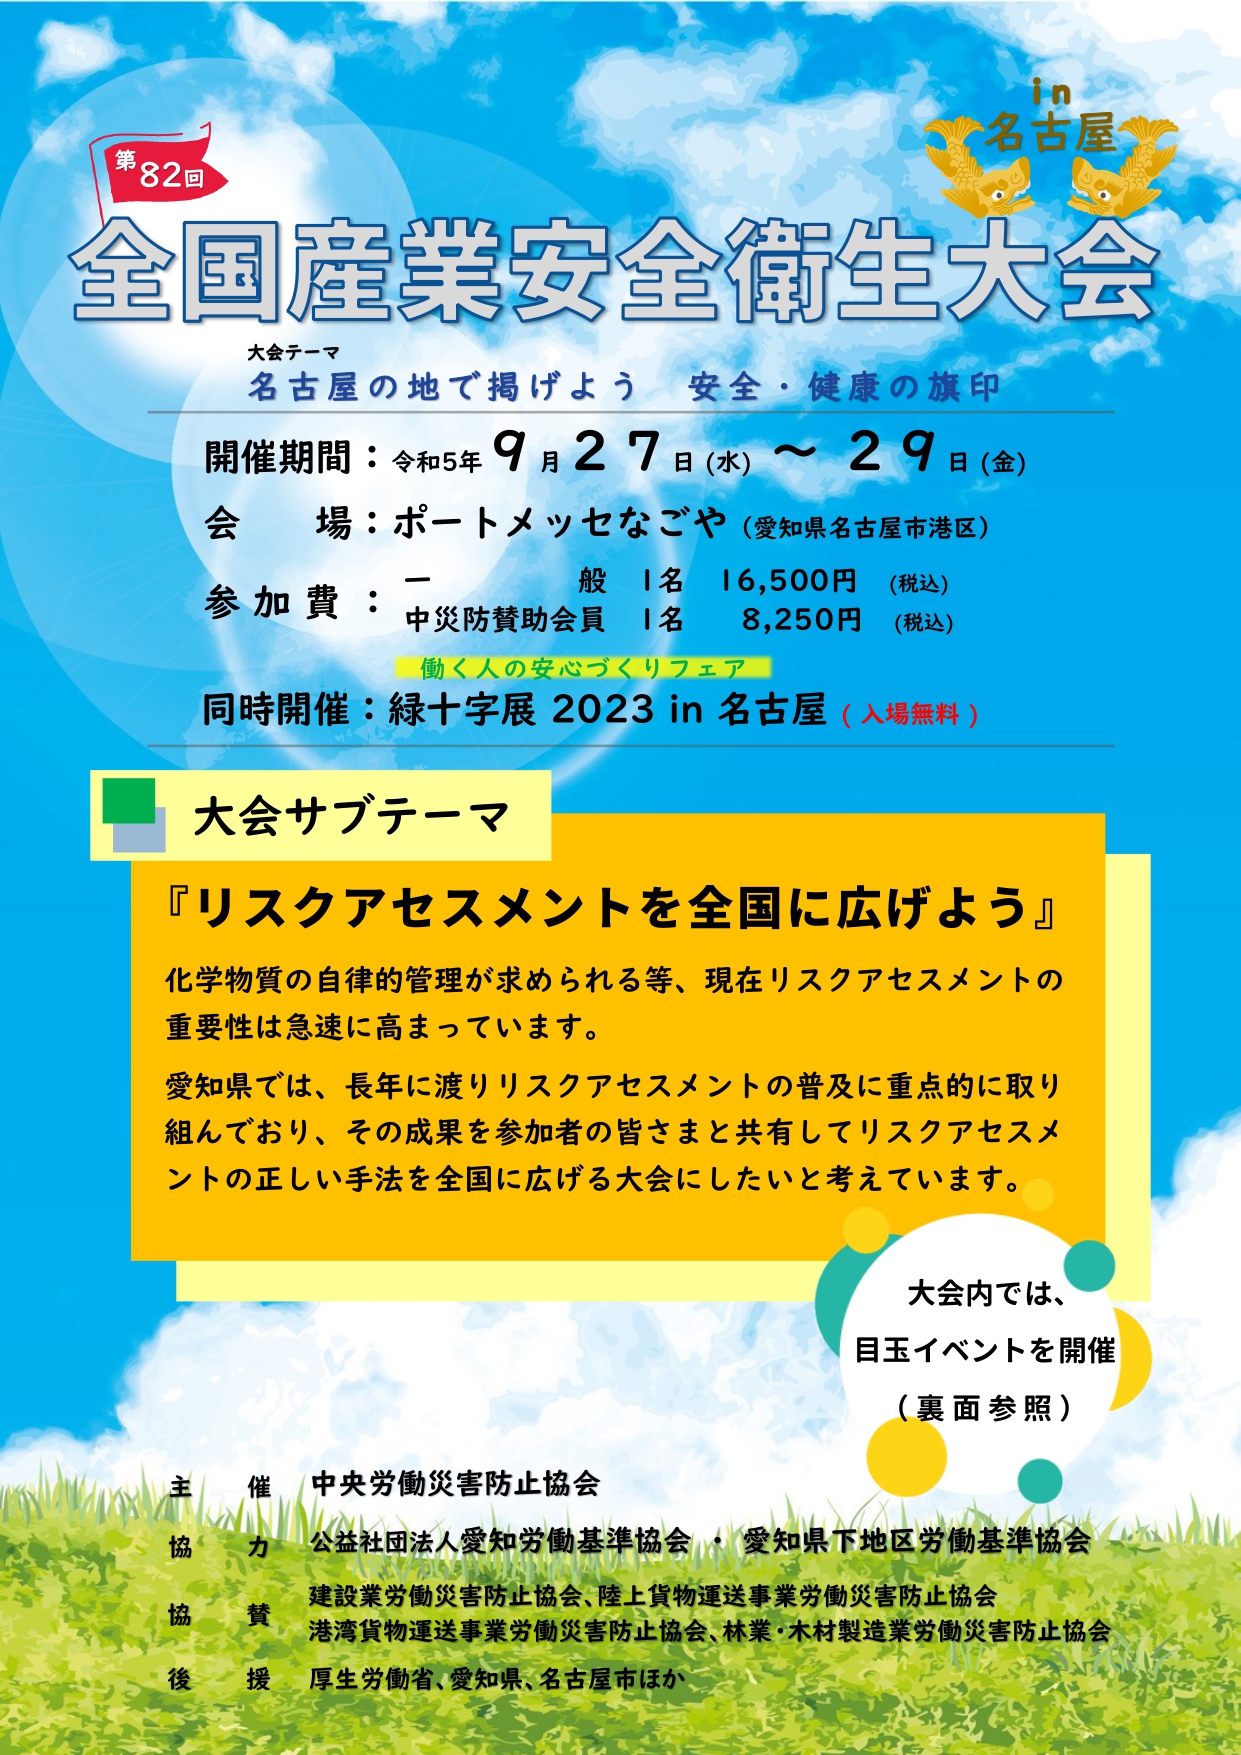 23nagoya_kenkyouVer_leaflet_hyoushi.jpg